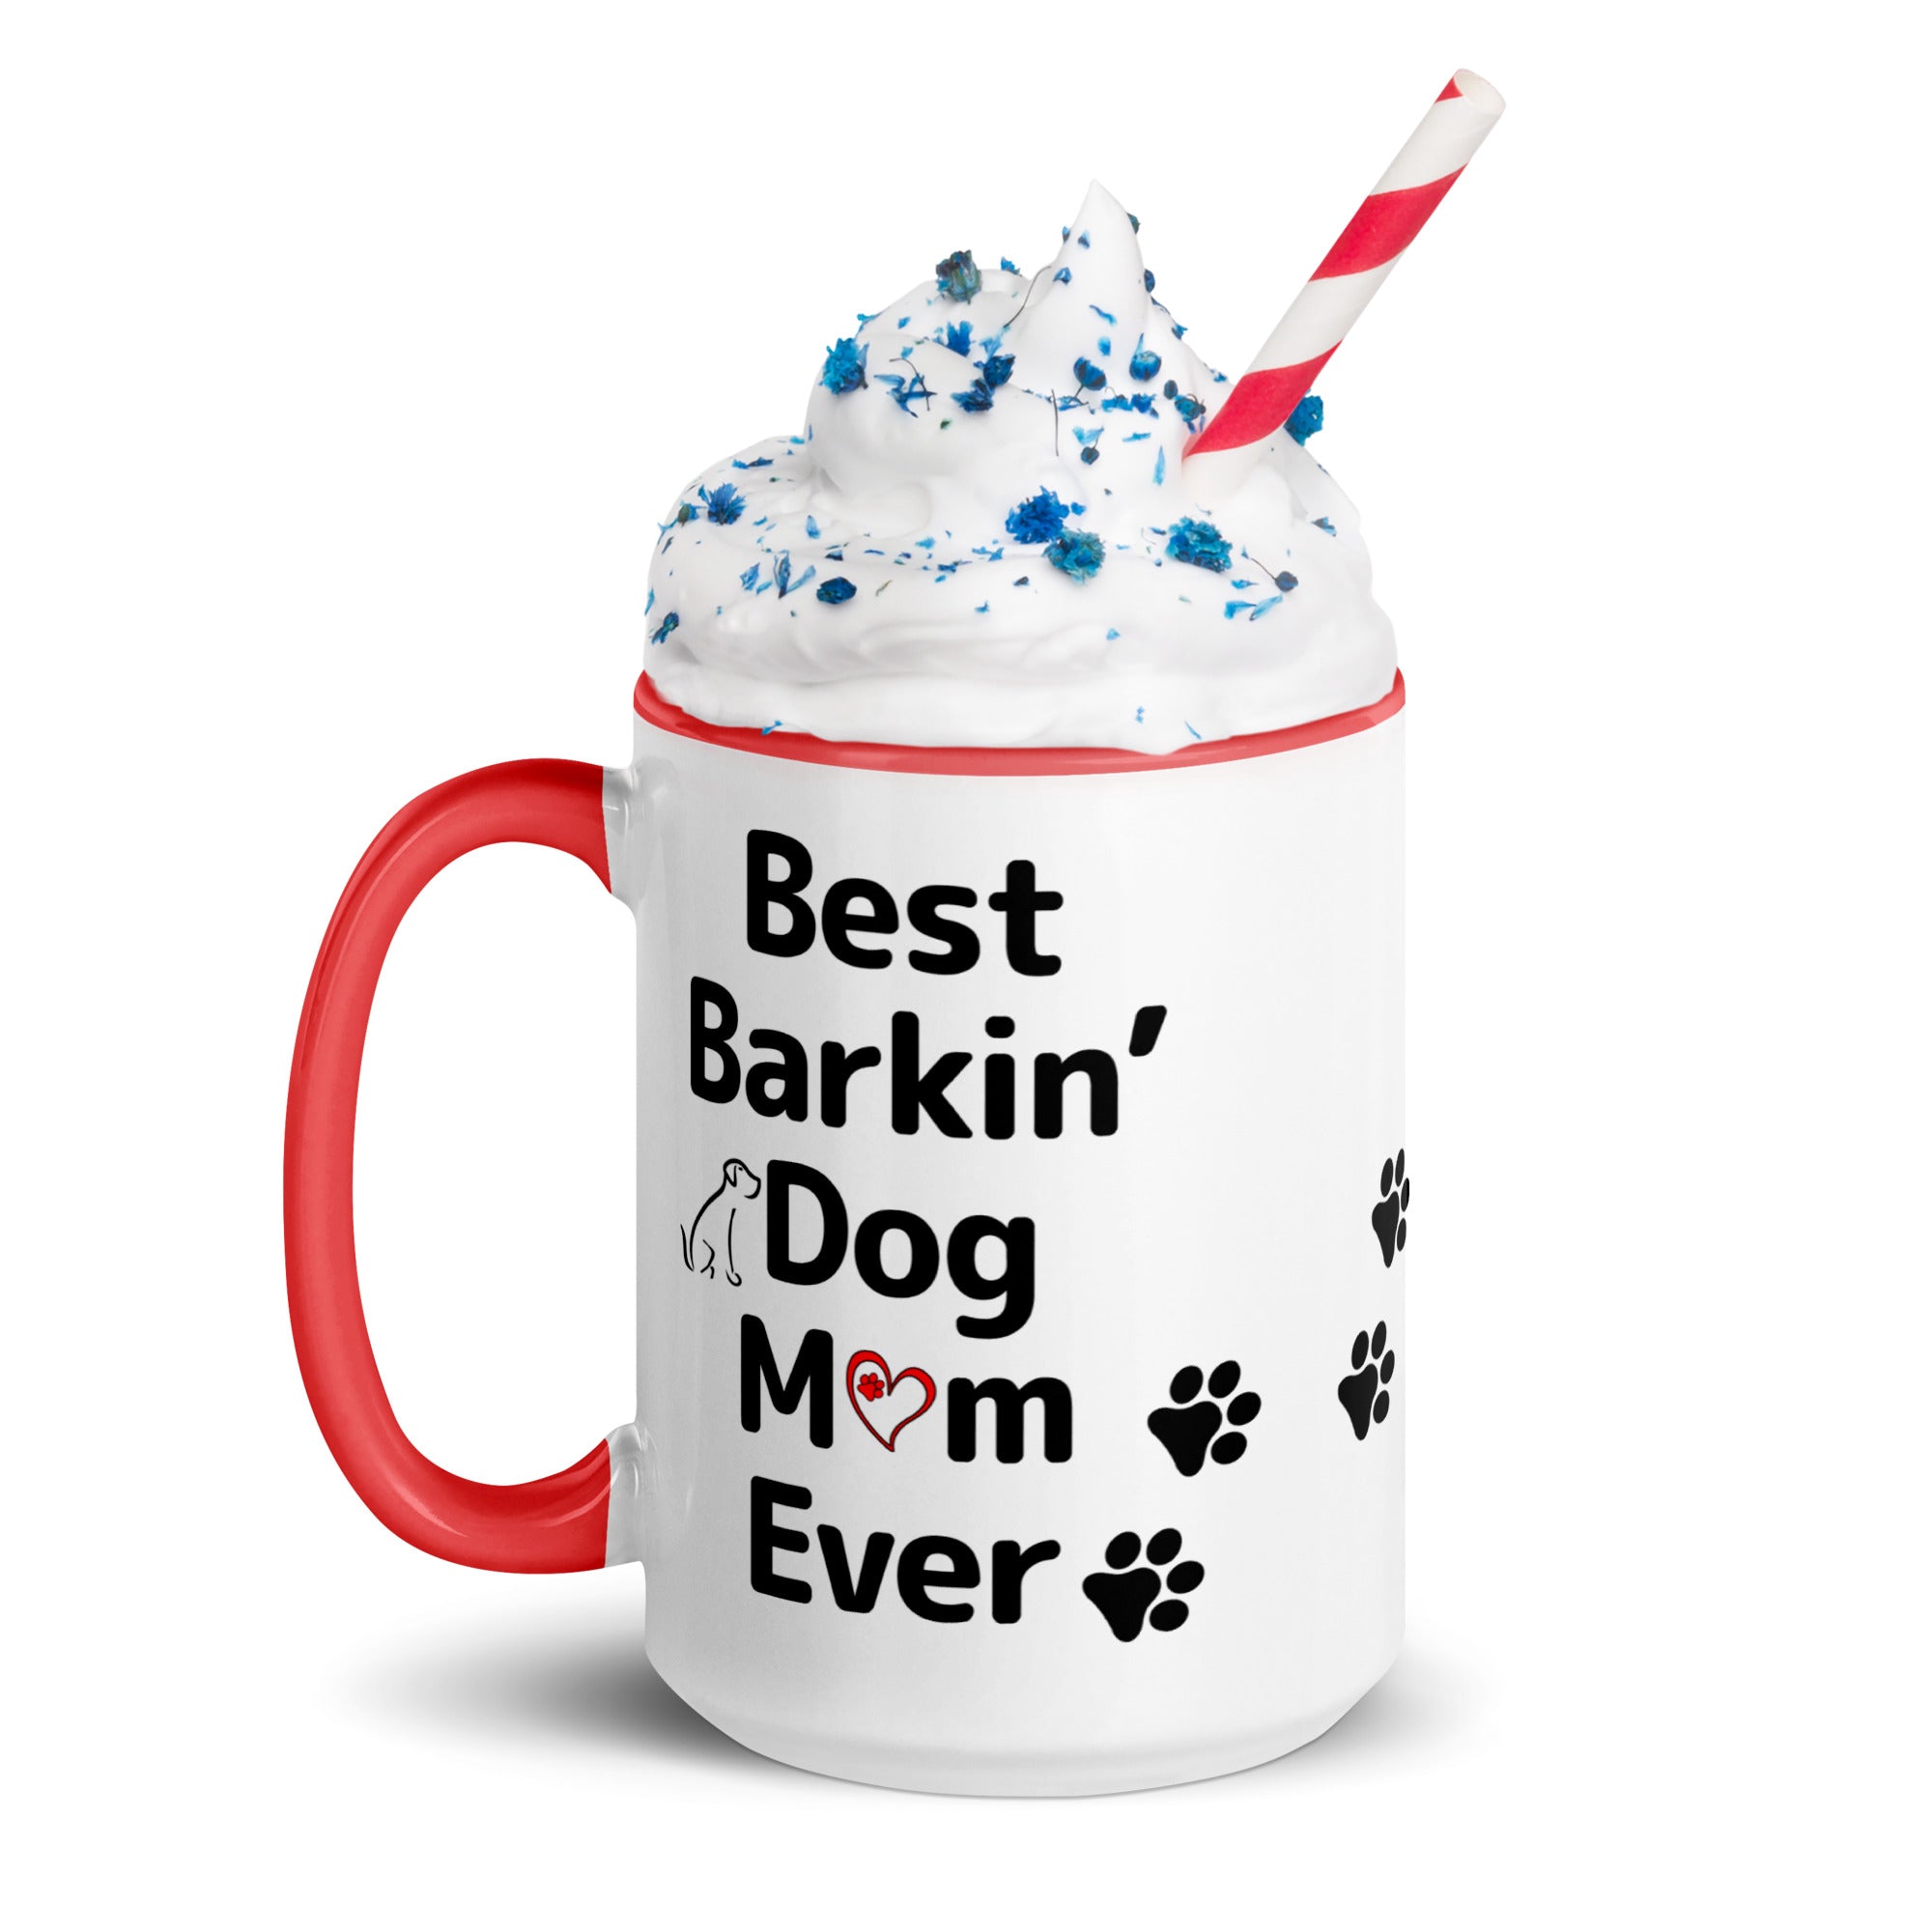 Best Barkin' Dog Mom Ever Mug with Color Inside